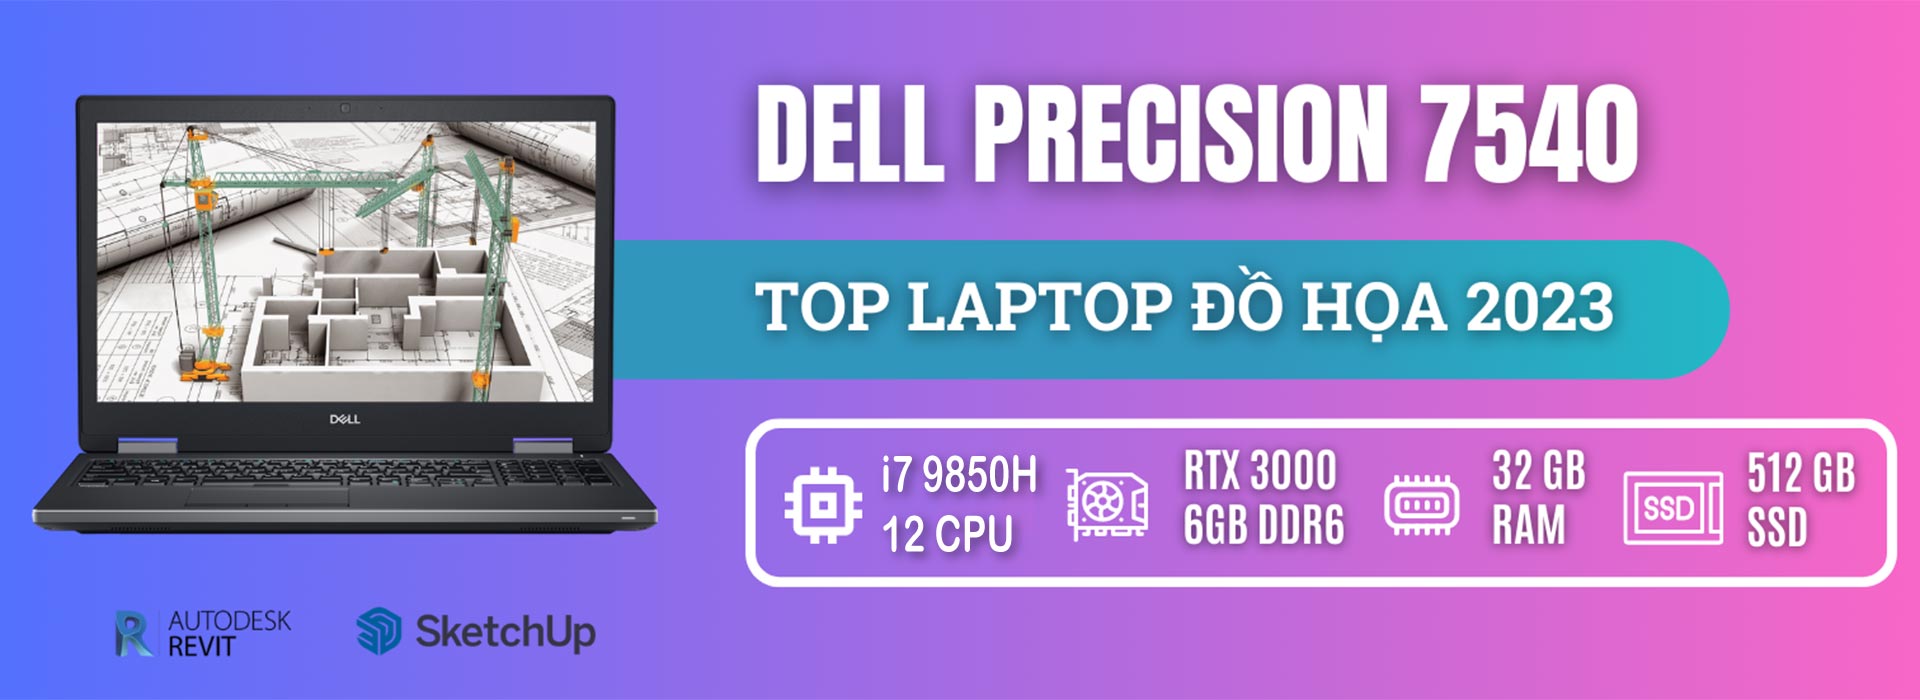 Dell-precison-7540